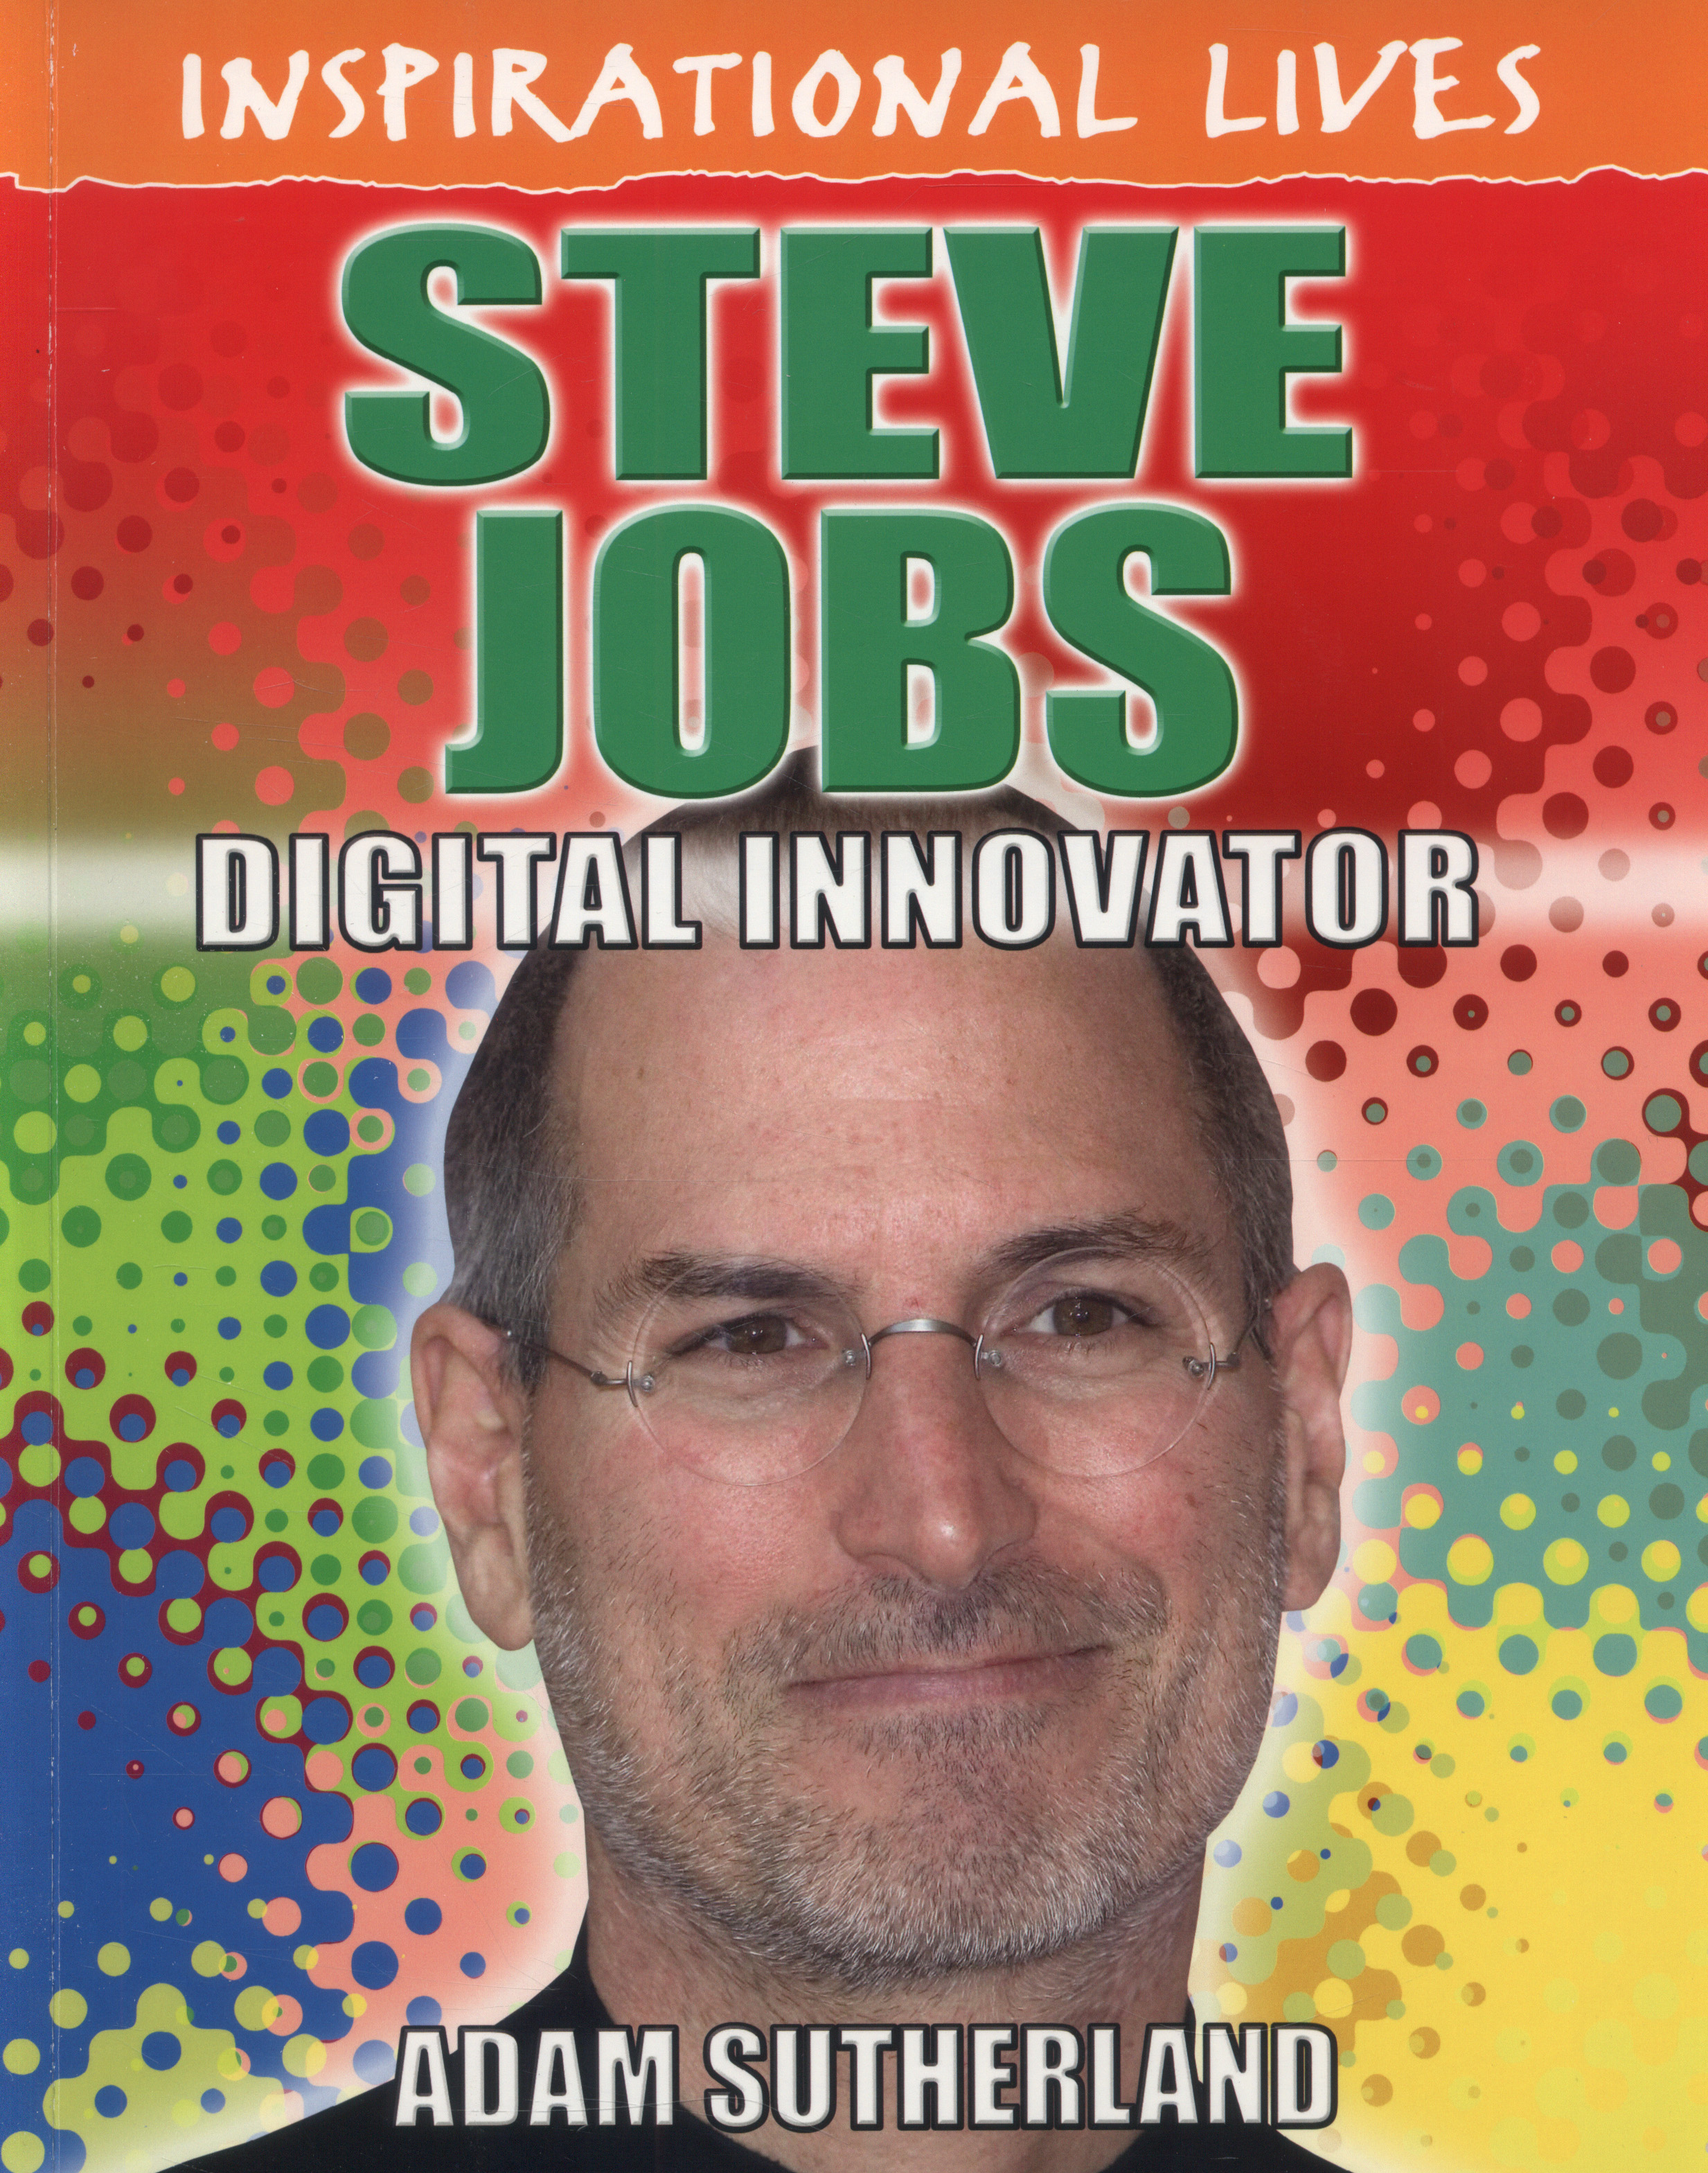 Steve Jobs An Innovator And Visionary